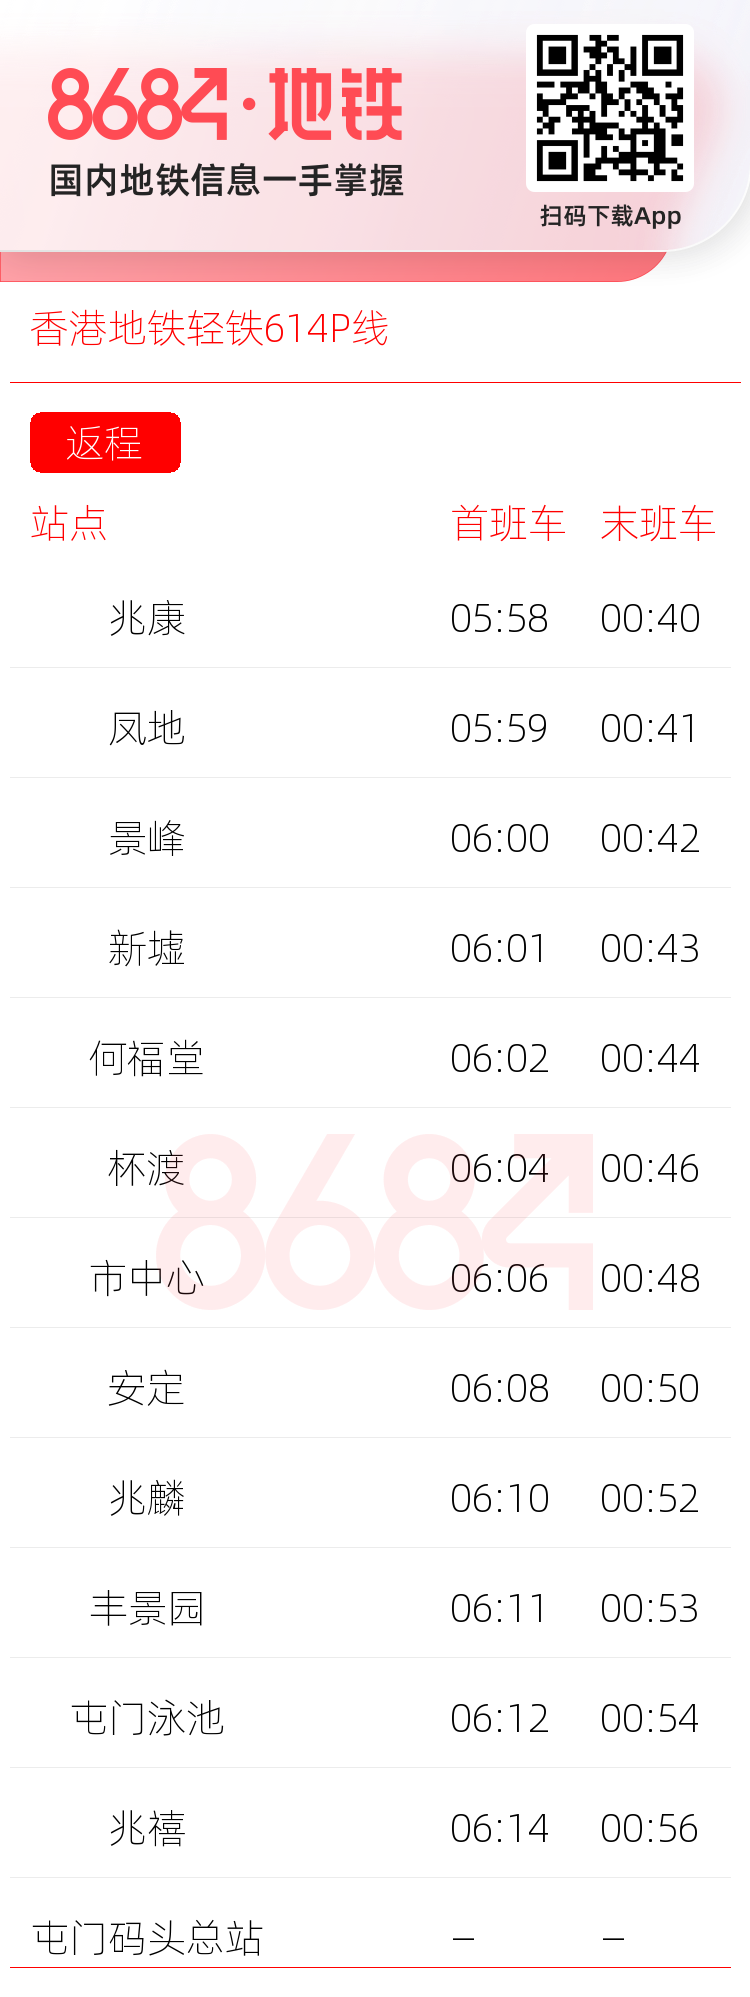 香港地铁轻铁614P线运营时间表